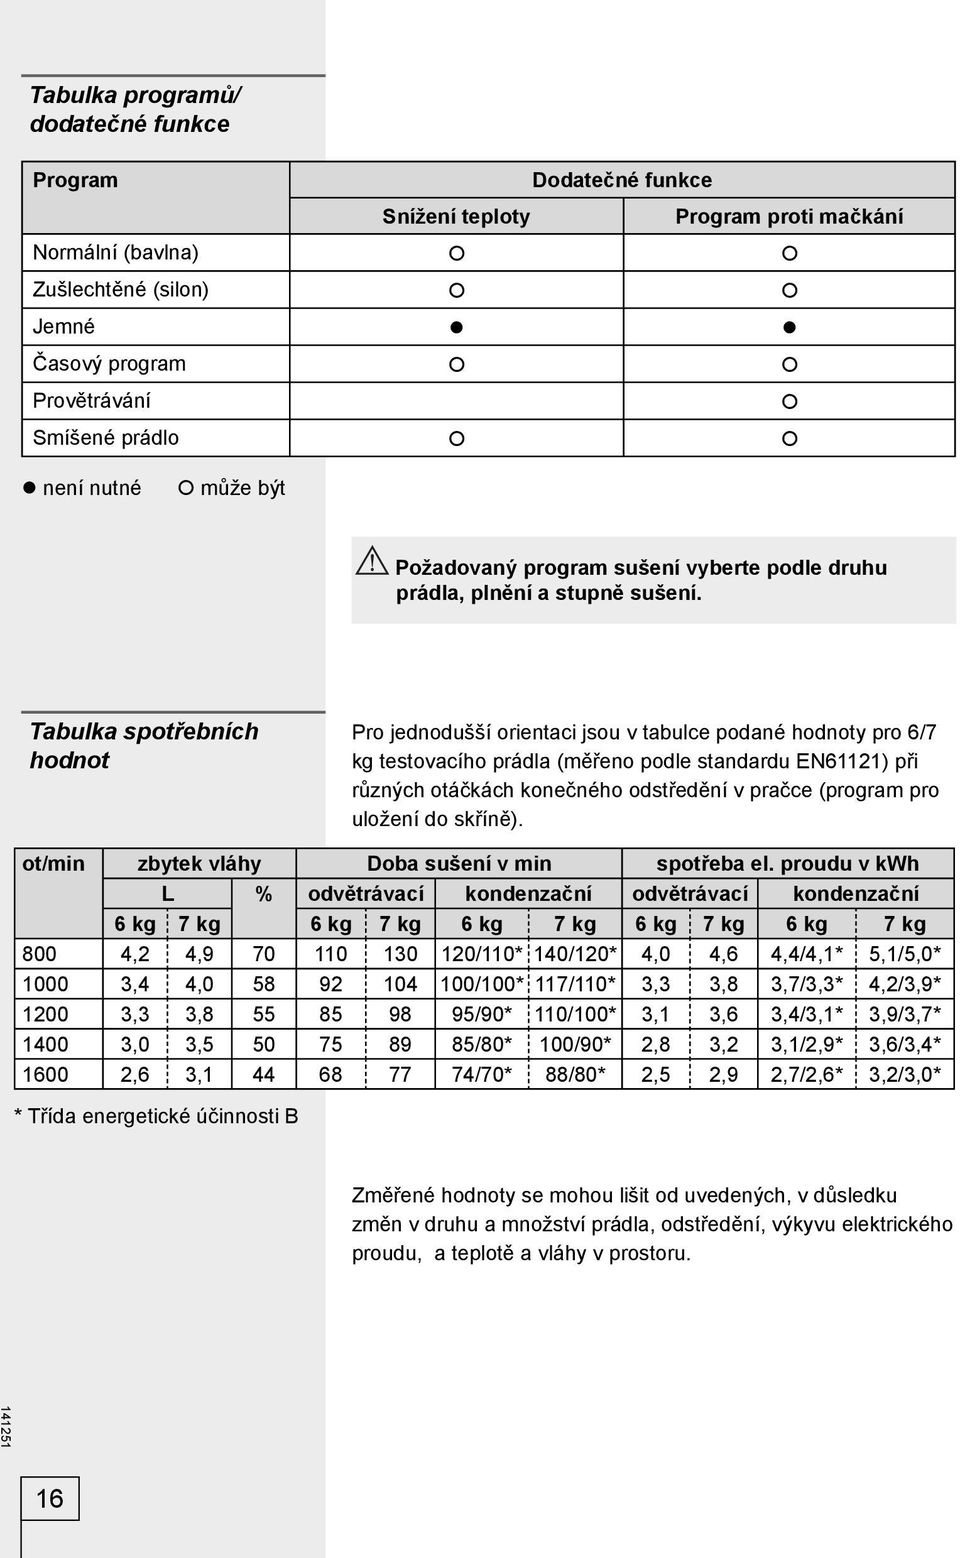 Tabulka spotřebních hodnot Pro jednodušší orientaci jsou v tabulce podané hodnoty pro 6/7 kg testovacího prádla (měřeno podle standardu EN61121) při různých otáčkách konečného odstředění v pračce